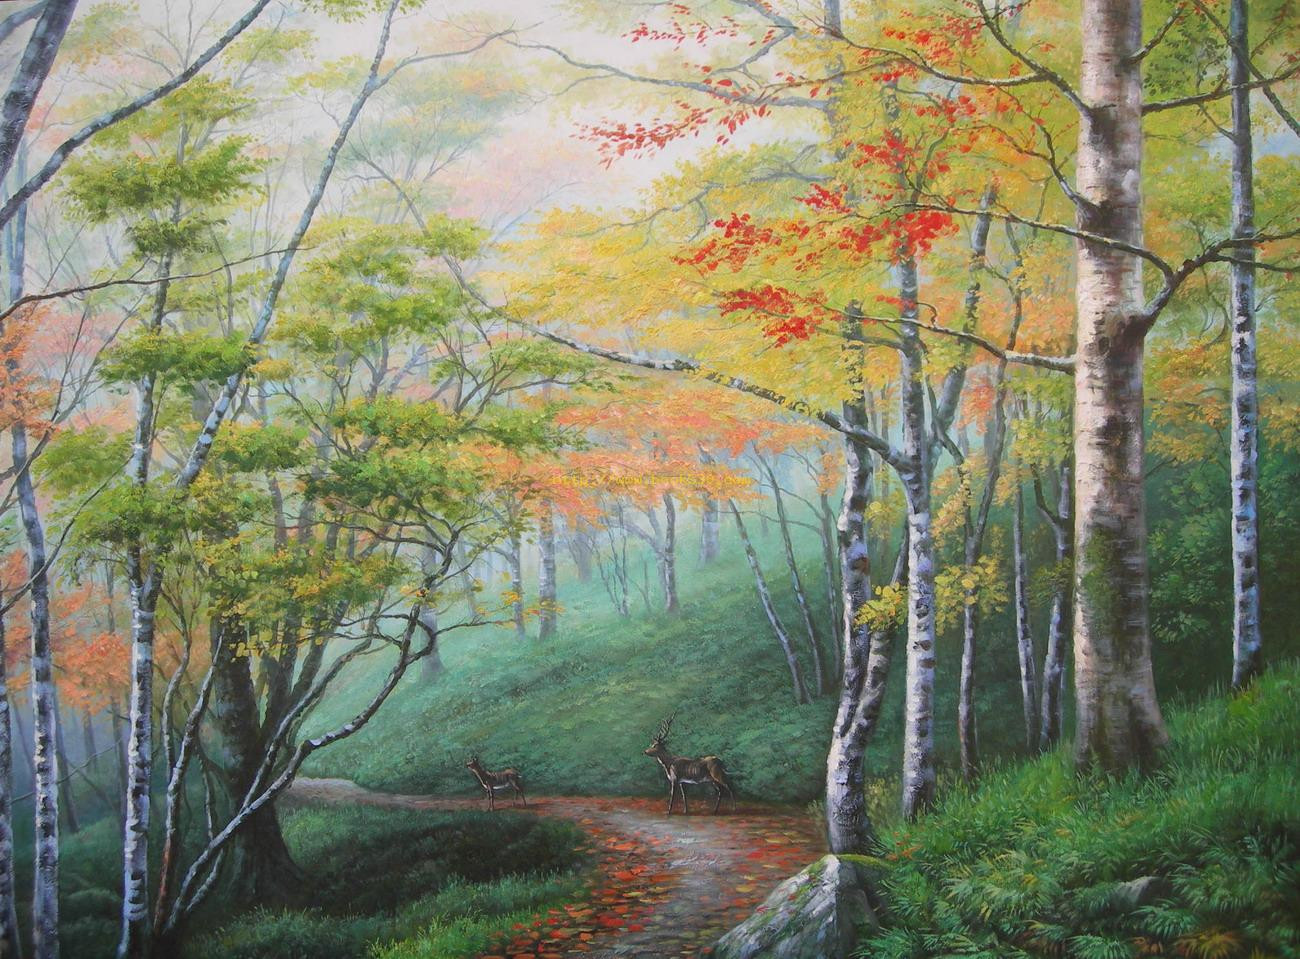 Best ideas about Landscape Oil Painting
. Save or Pin Woods deer landscape oil painting Now.